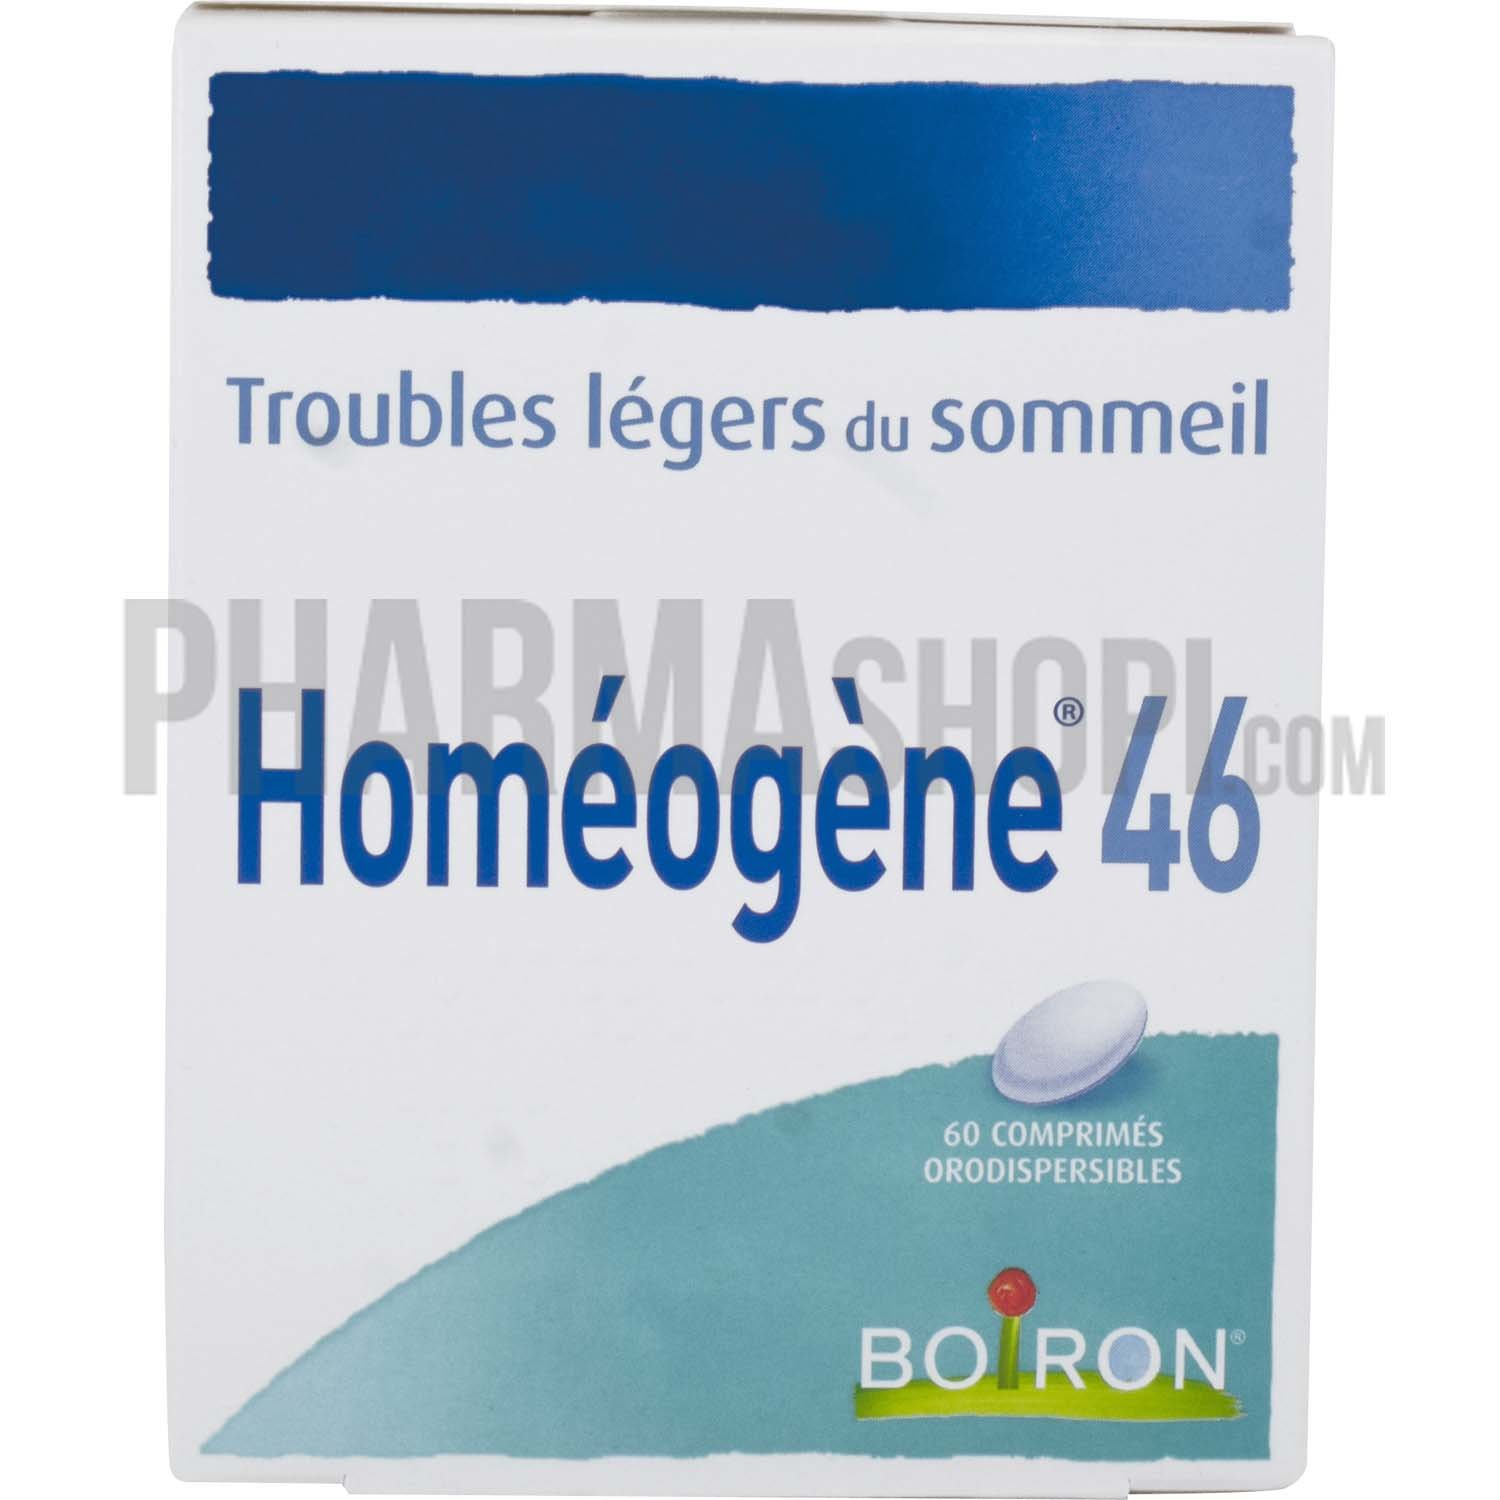 Homéogène 46 comprimé orodispersible Boiron - boite de 60 comprimés